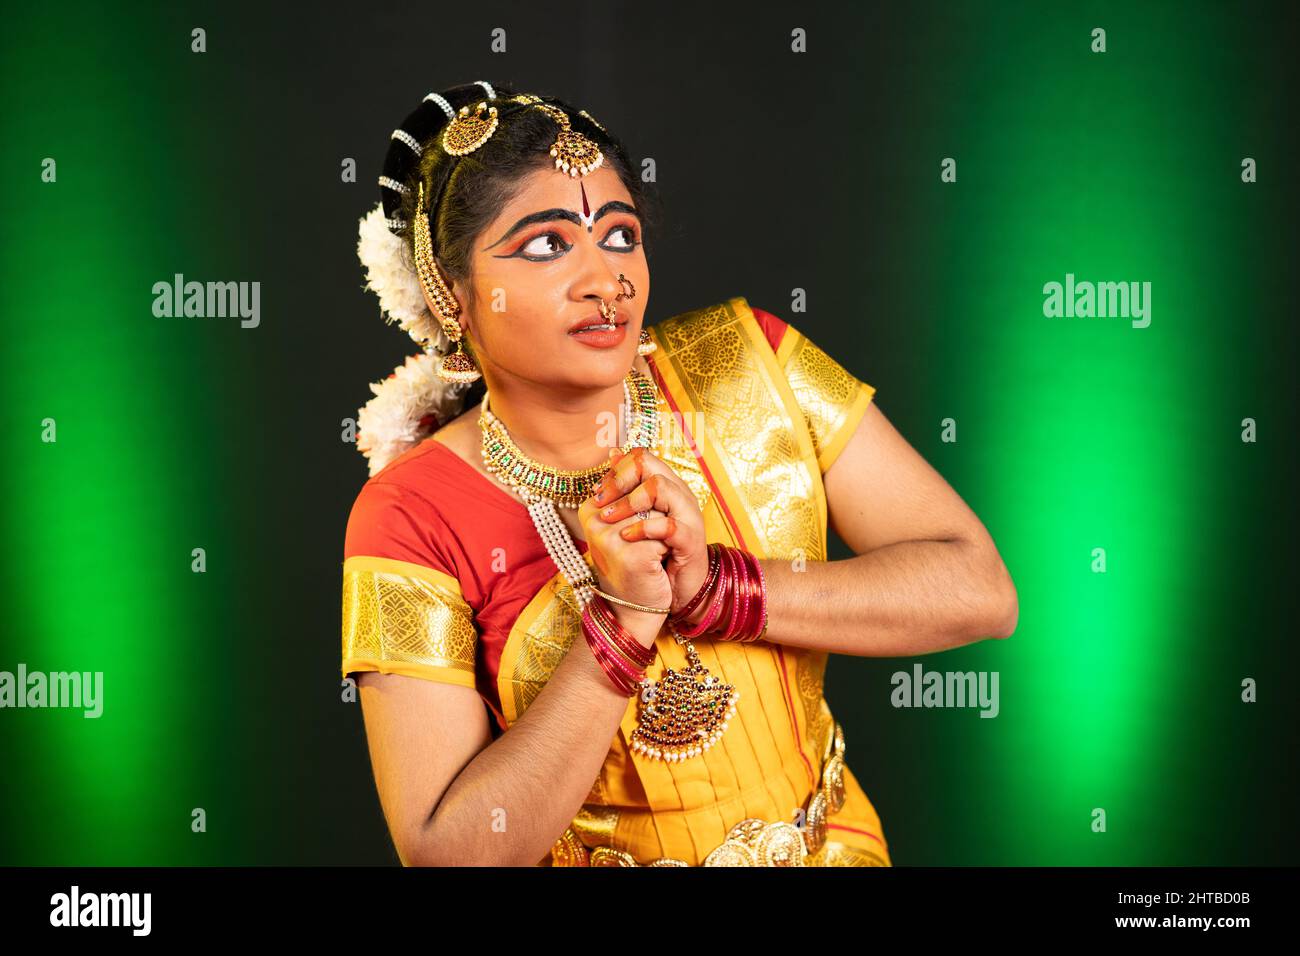 Junge Bharatnatyam-Tänzerin, die auf der Bühne ängstliche oder traurende Ausdrücke oder Emotionen aufführt - Konzept der indischen Kultur, traditioneller und klassischer Tanz Stockfoto